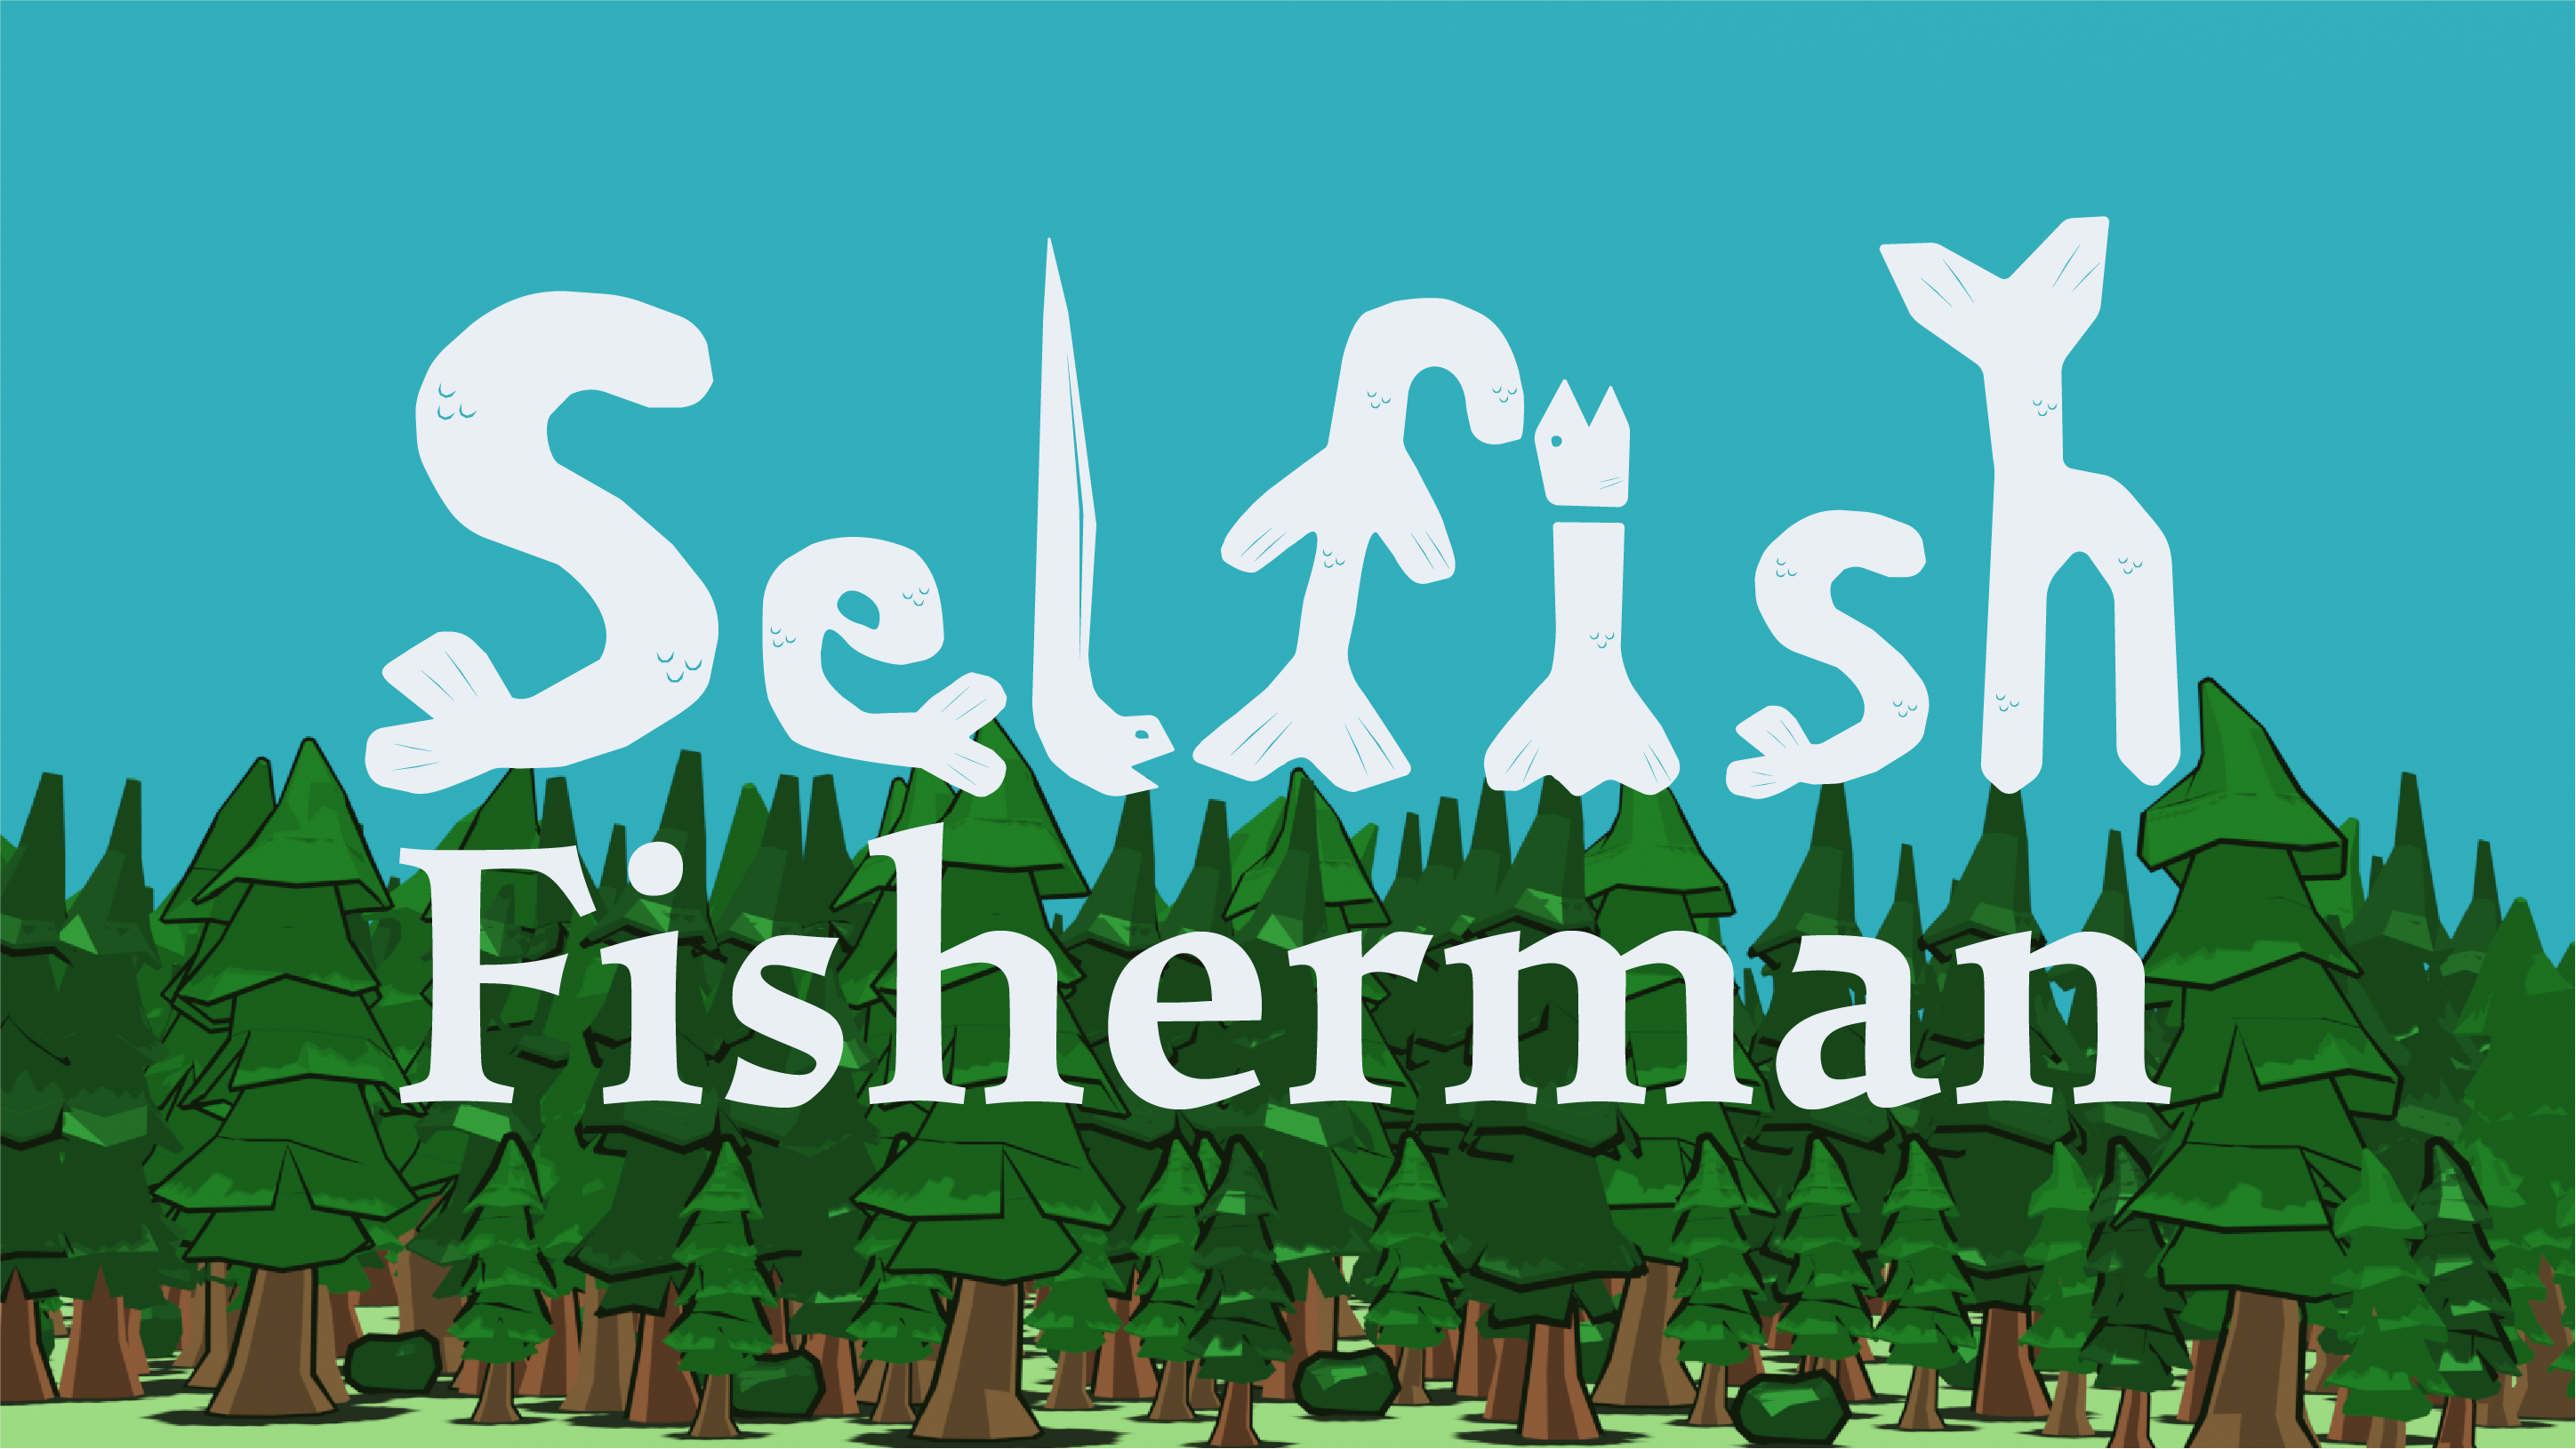 Selfish Fisherman